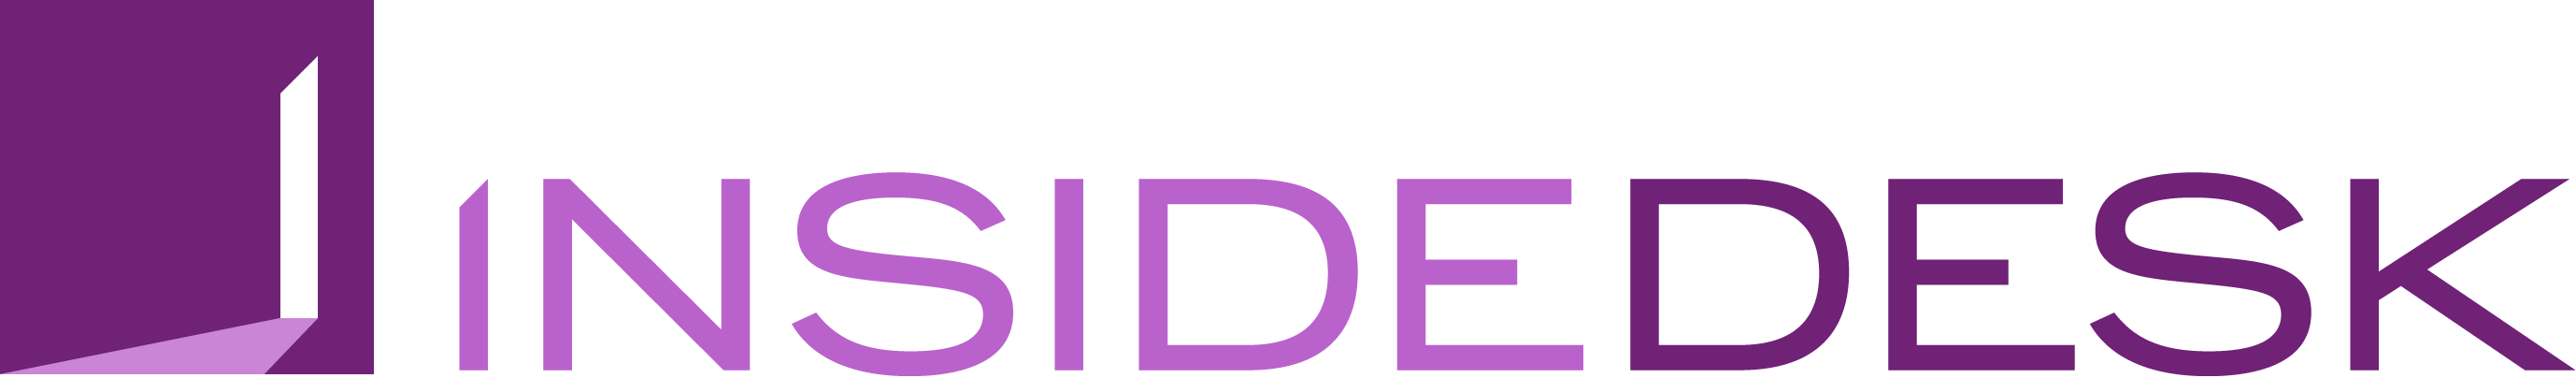 insidedesk-logo-large